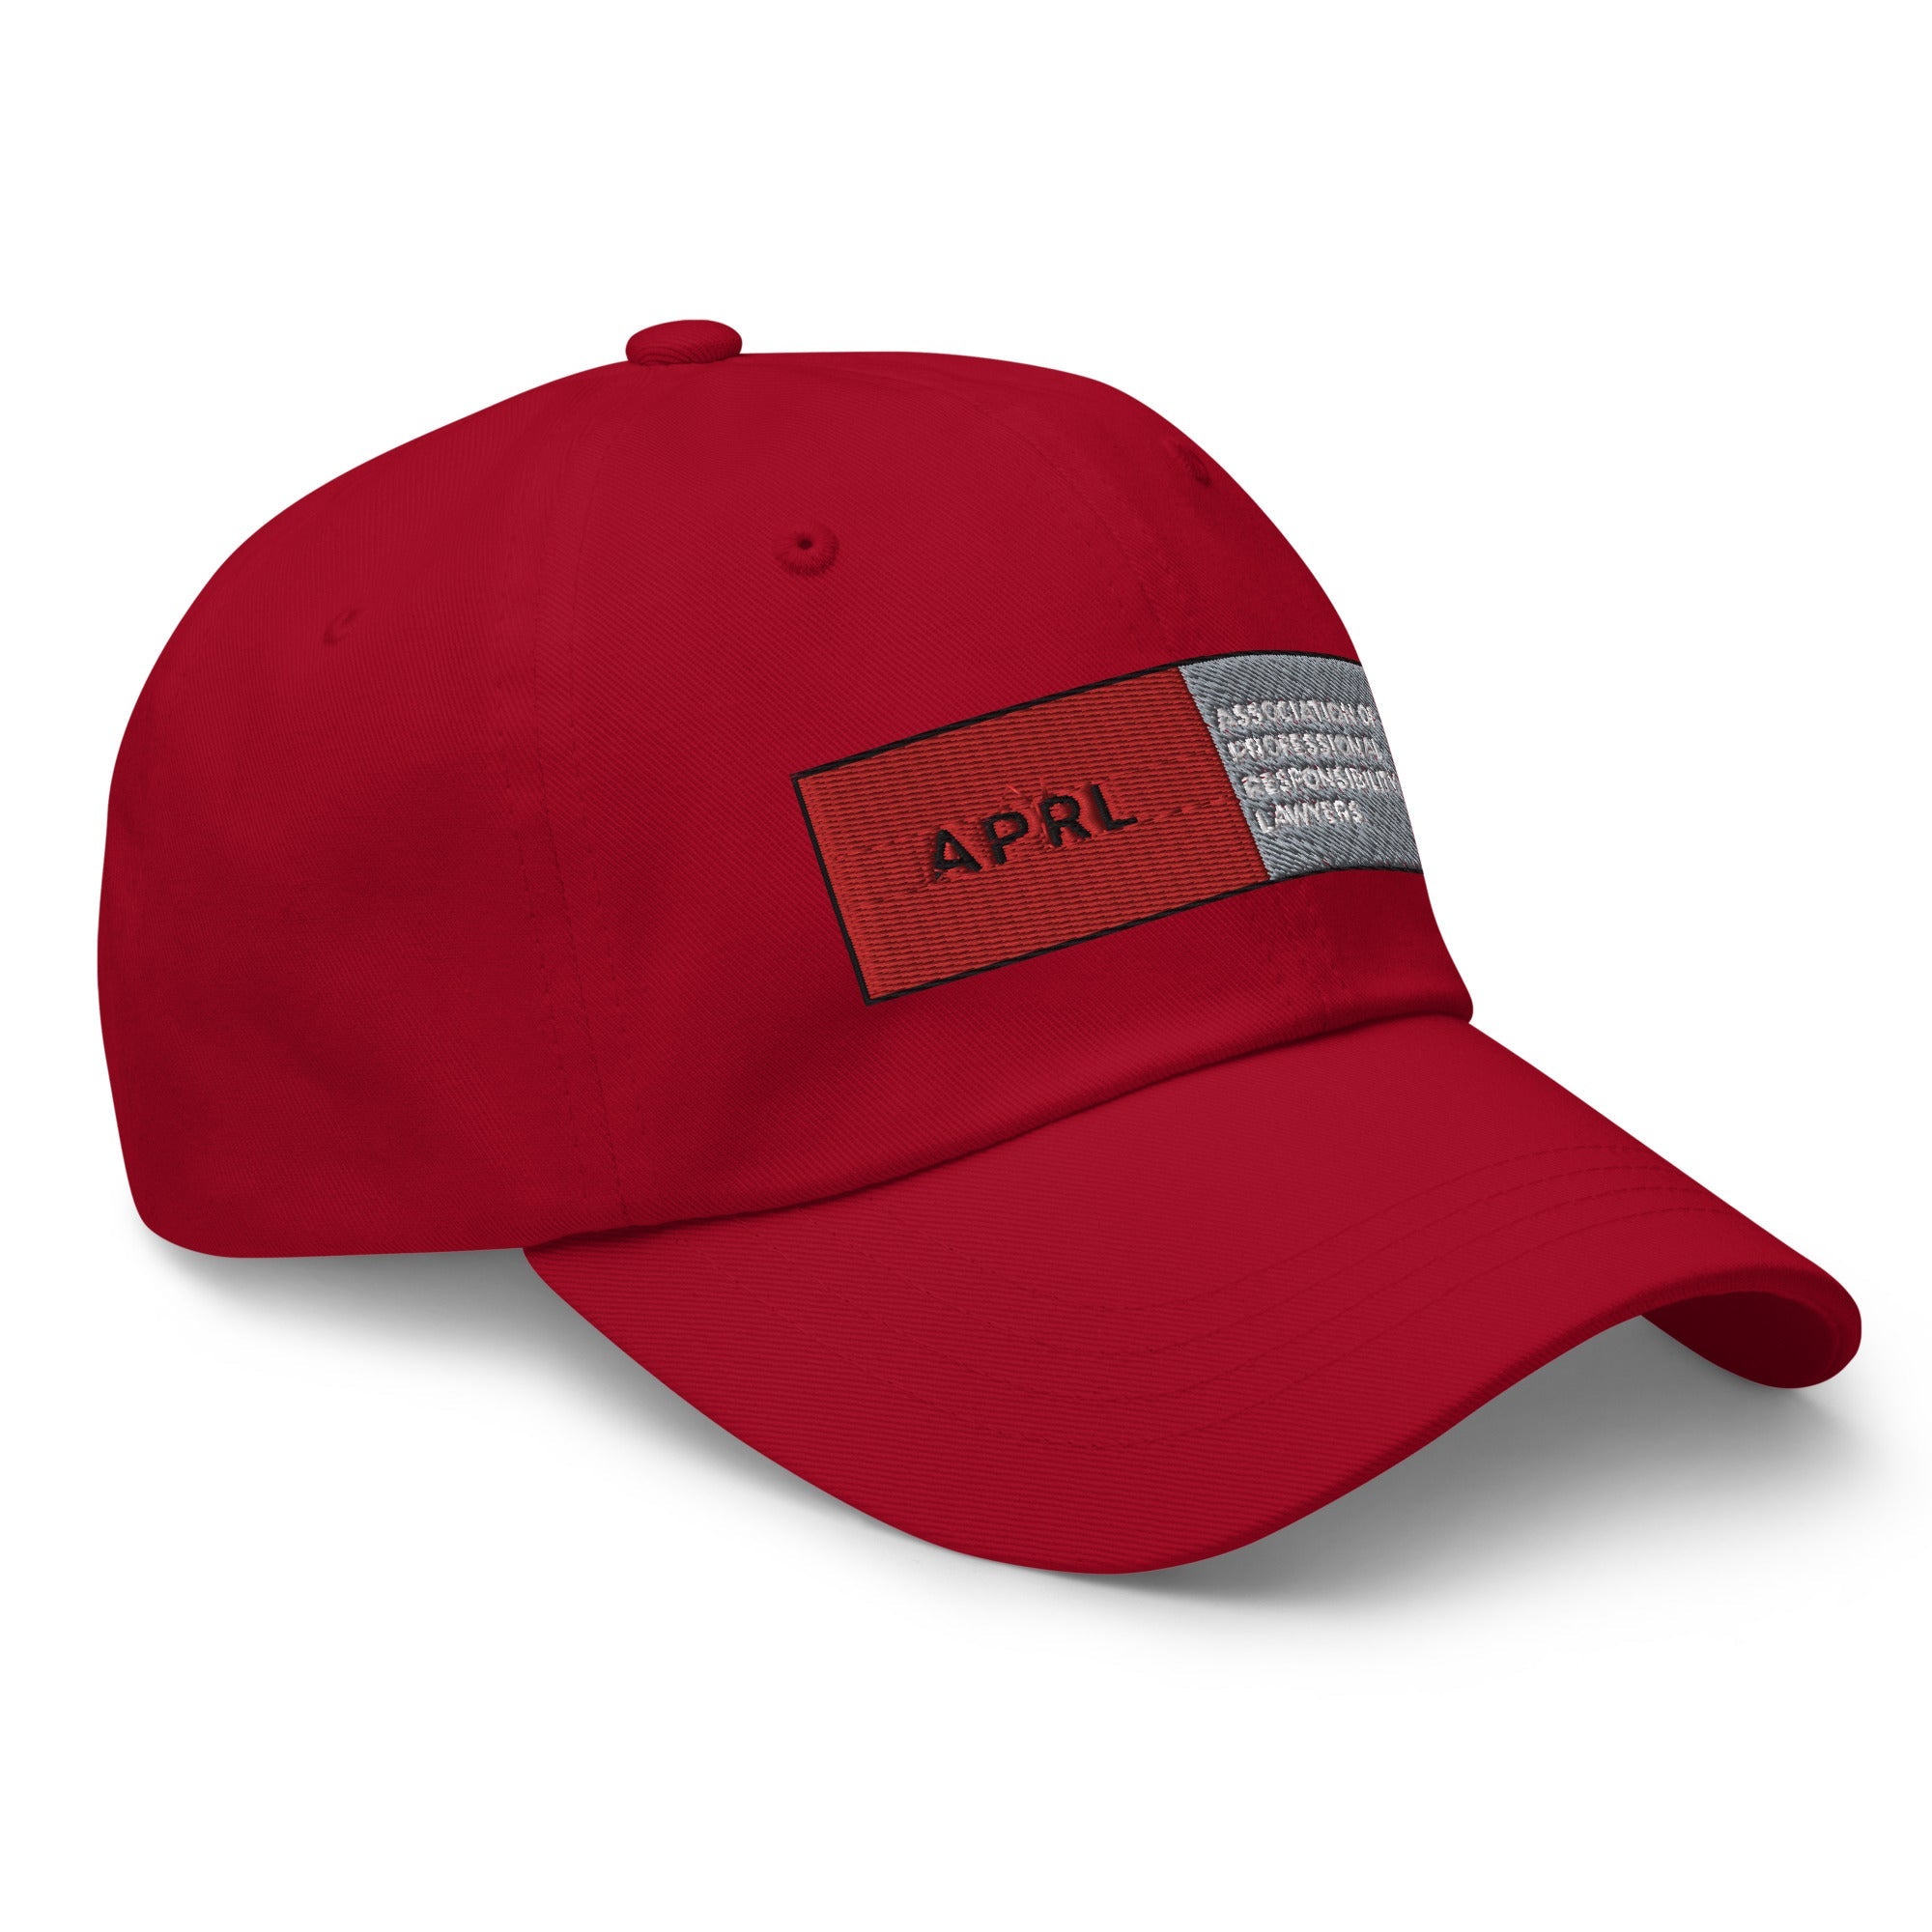 APRL Dad hat